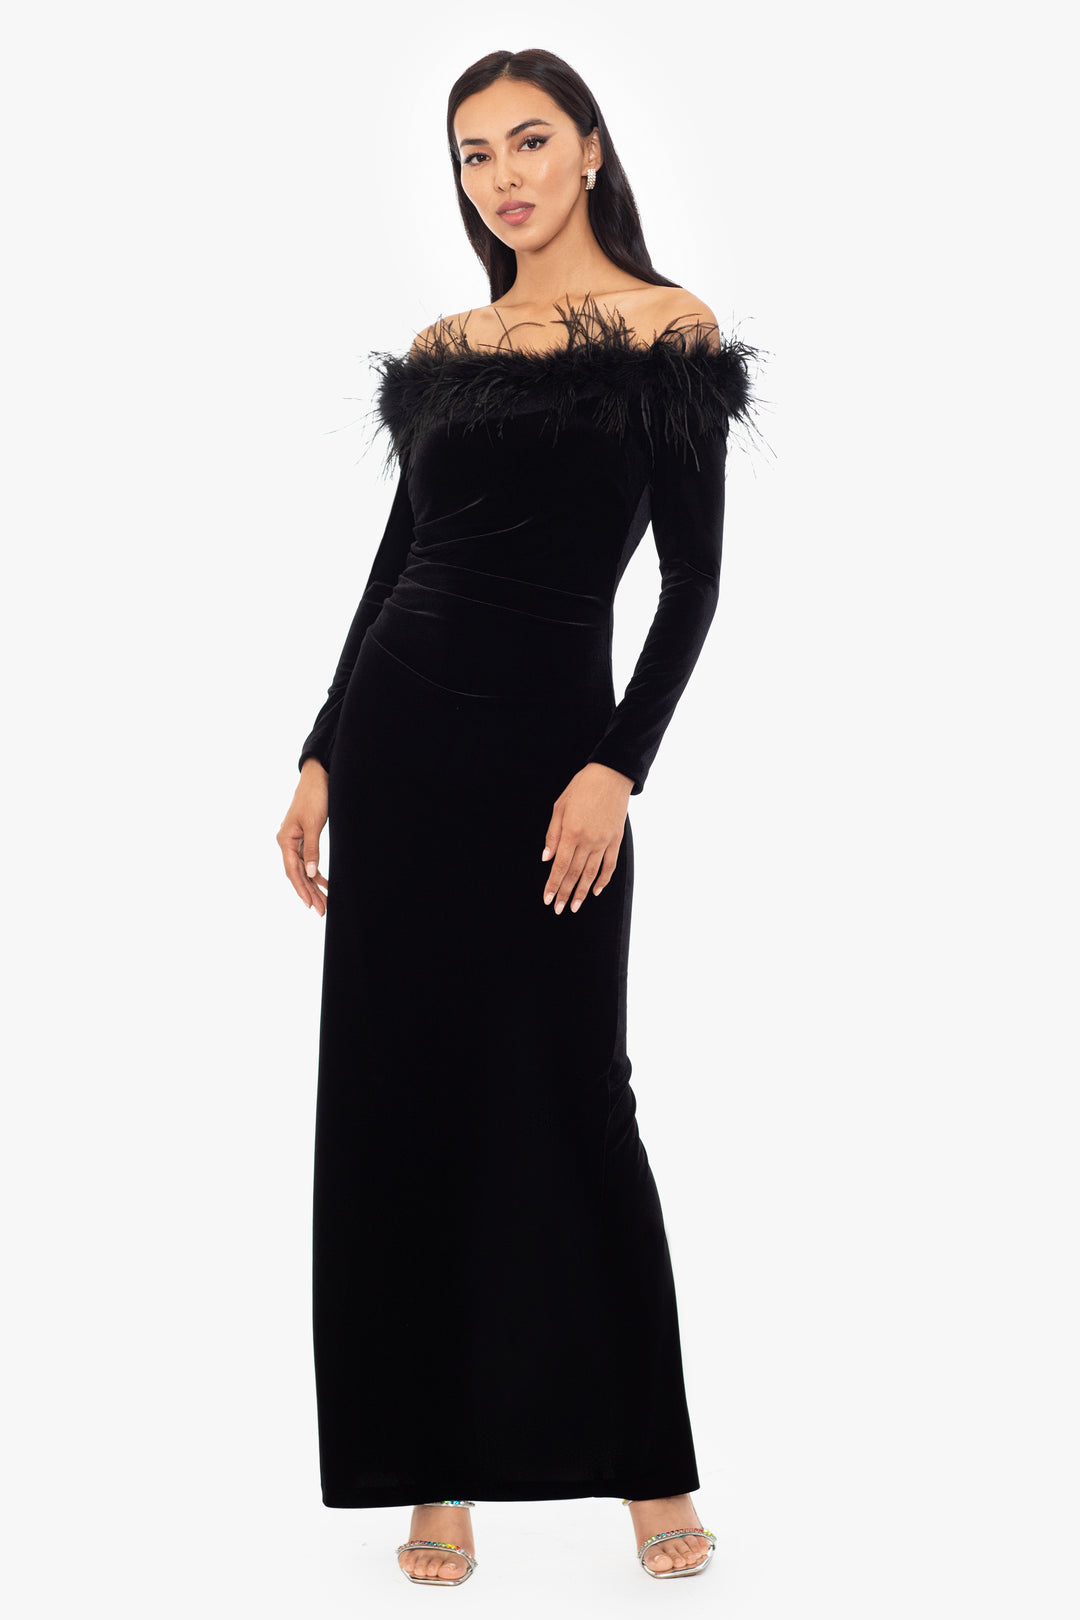 A Luxe-Looking Wardrobe Staple: Ava & Viv Velvet Long Sleeve Dress